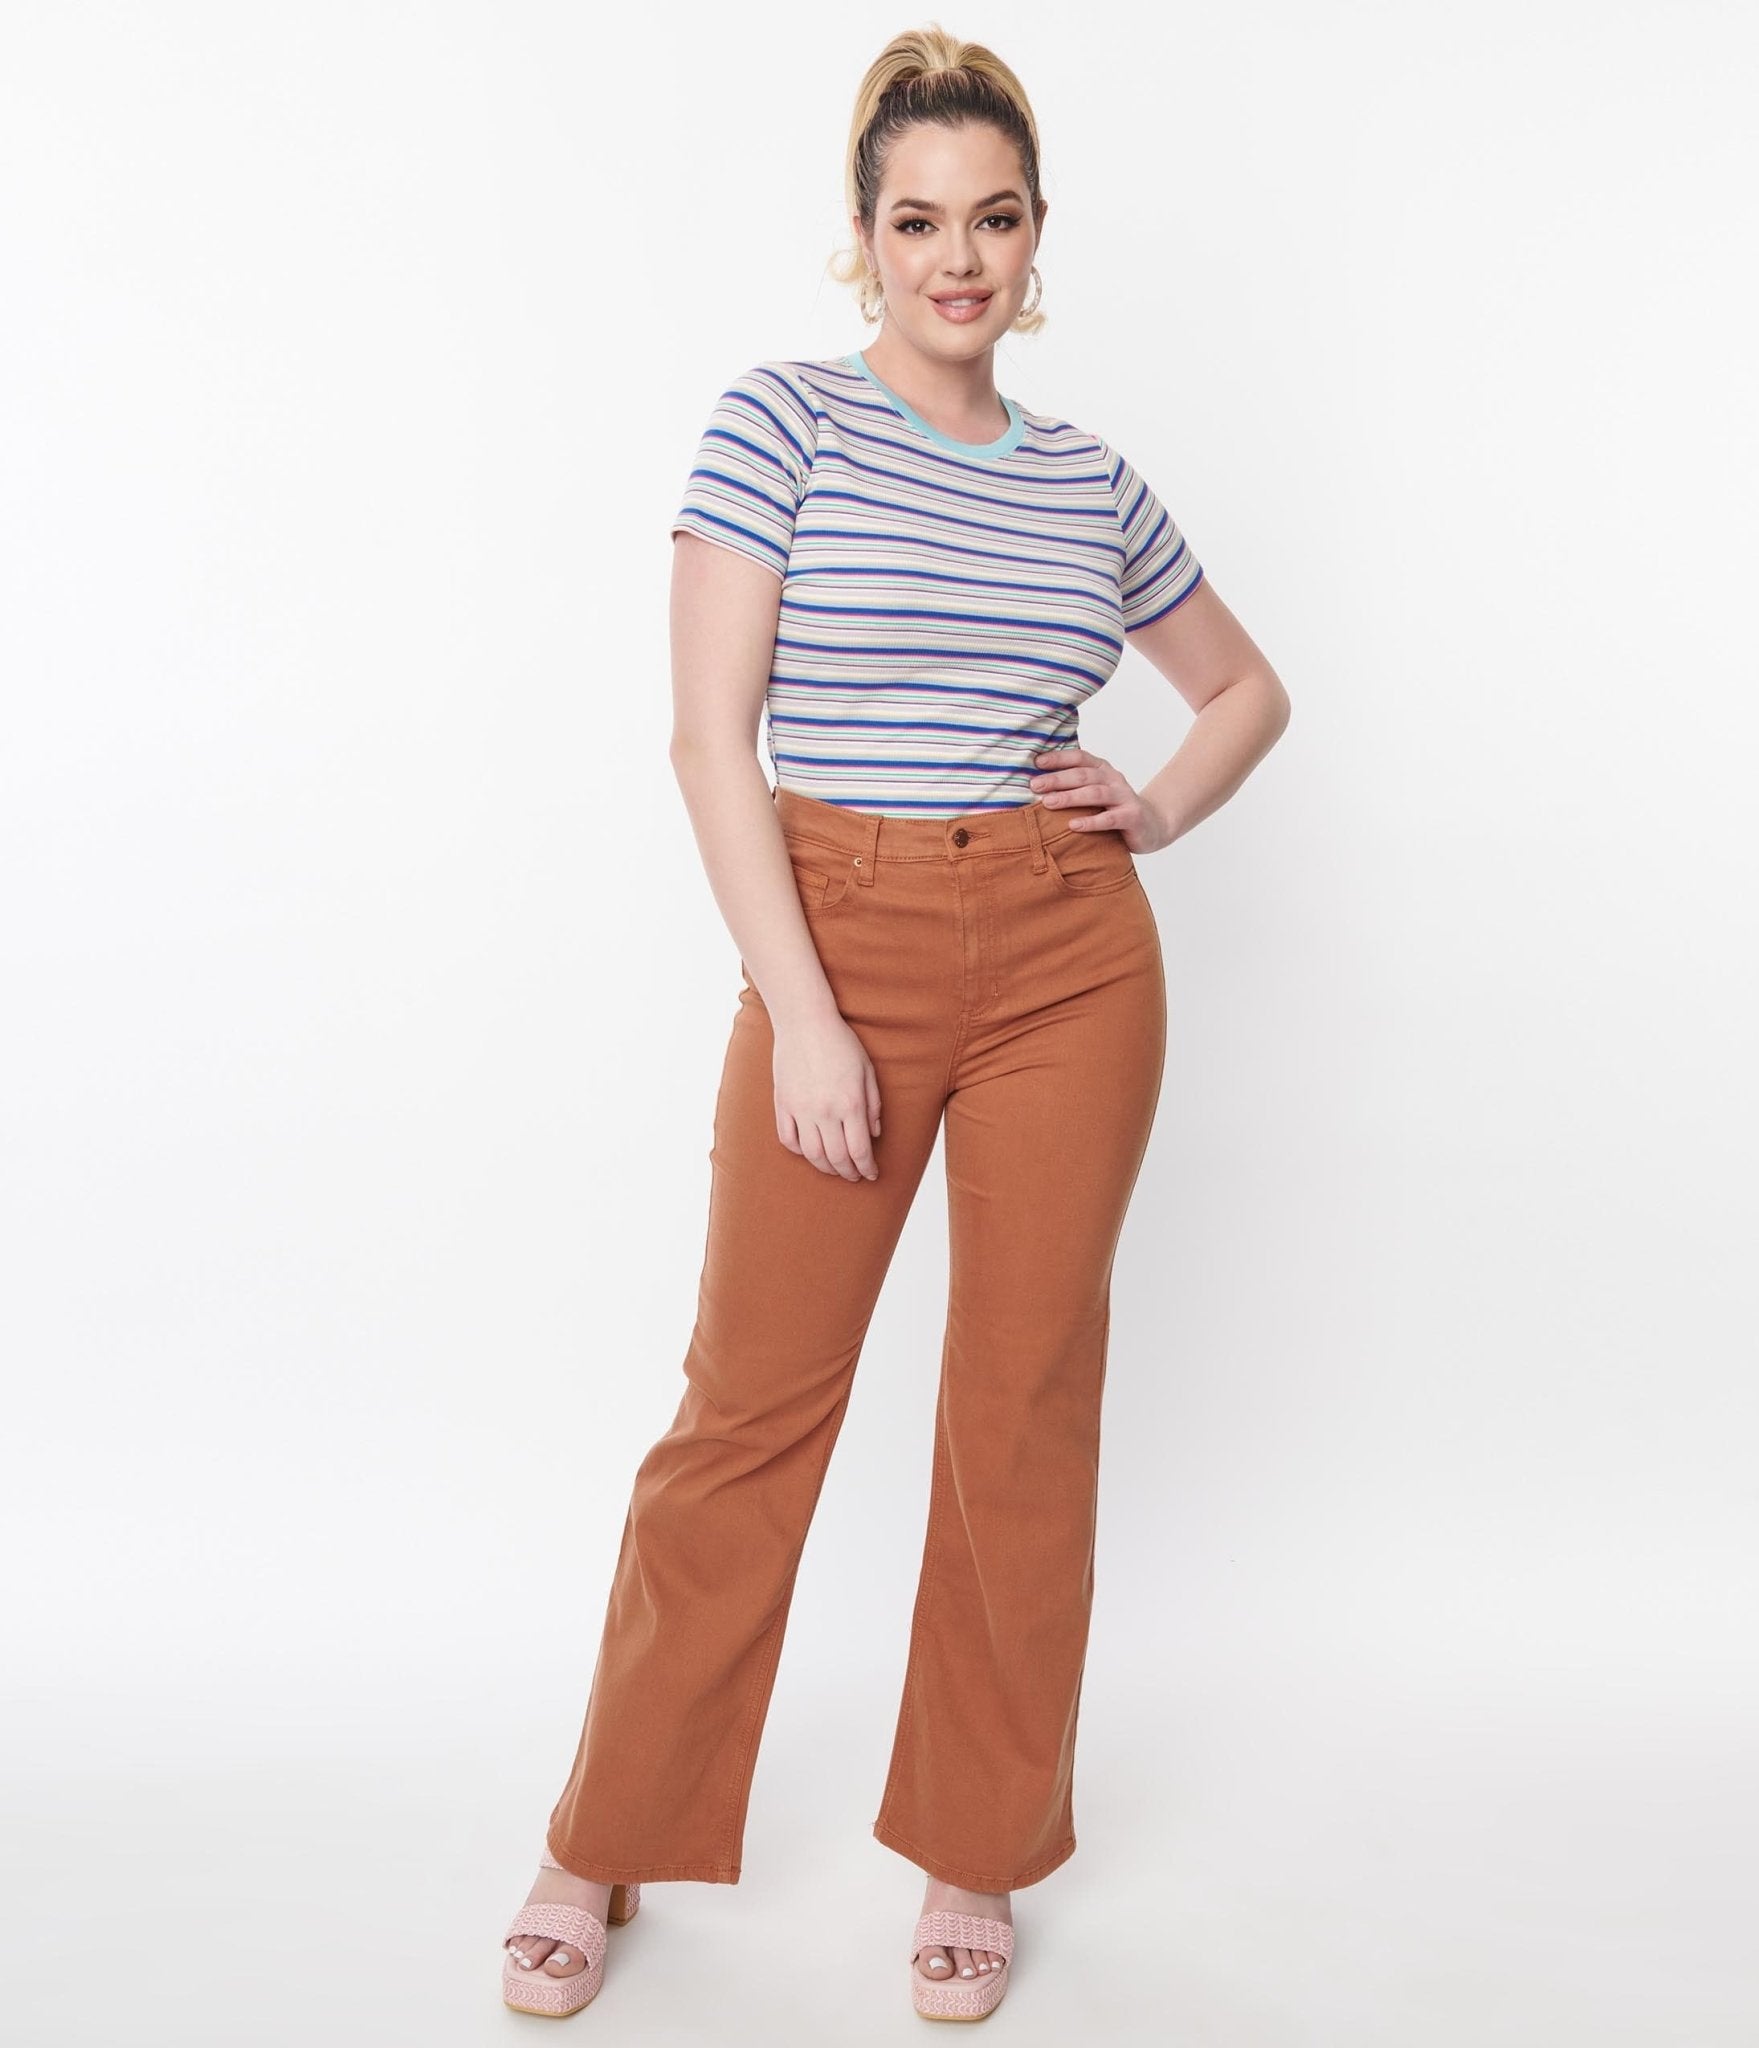 Rust Orange Classic High Rise Slim Bootcut Jeans - Unique Vintage - Womens, BOTTOMS, PANTS